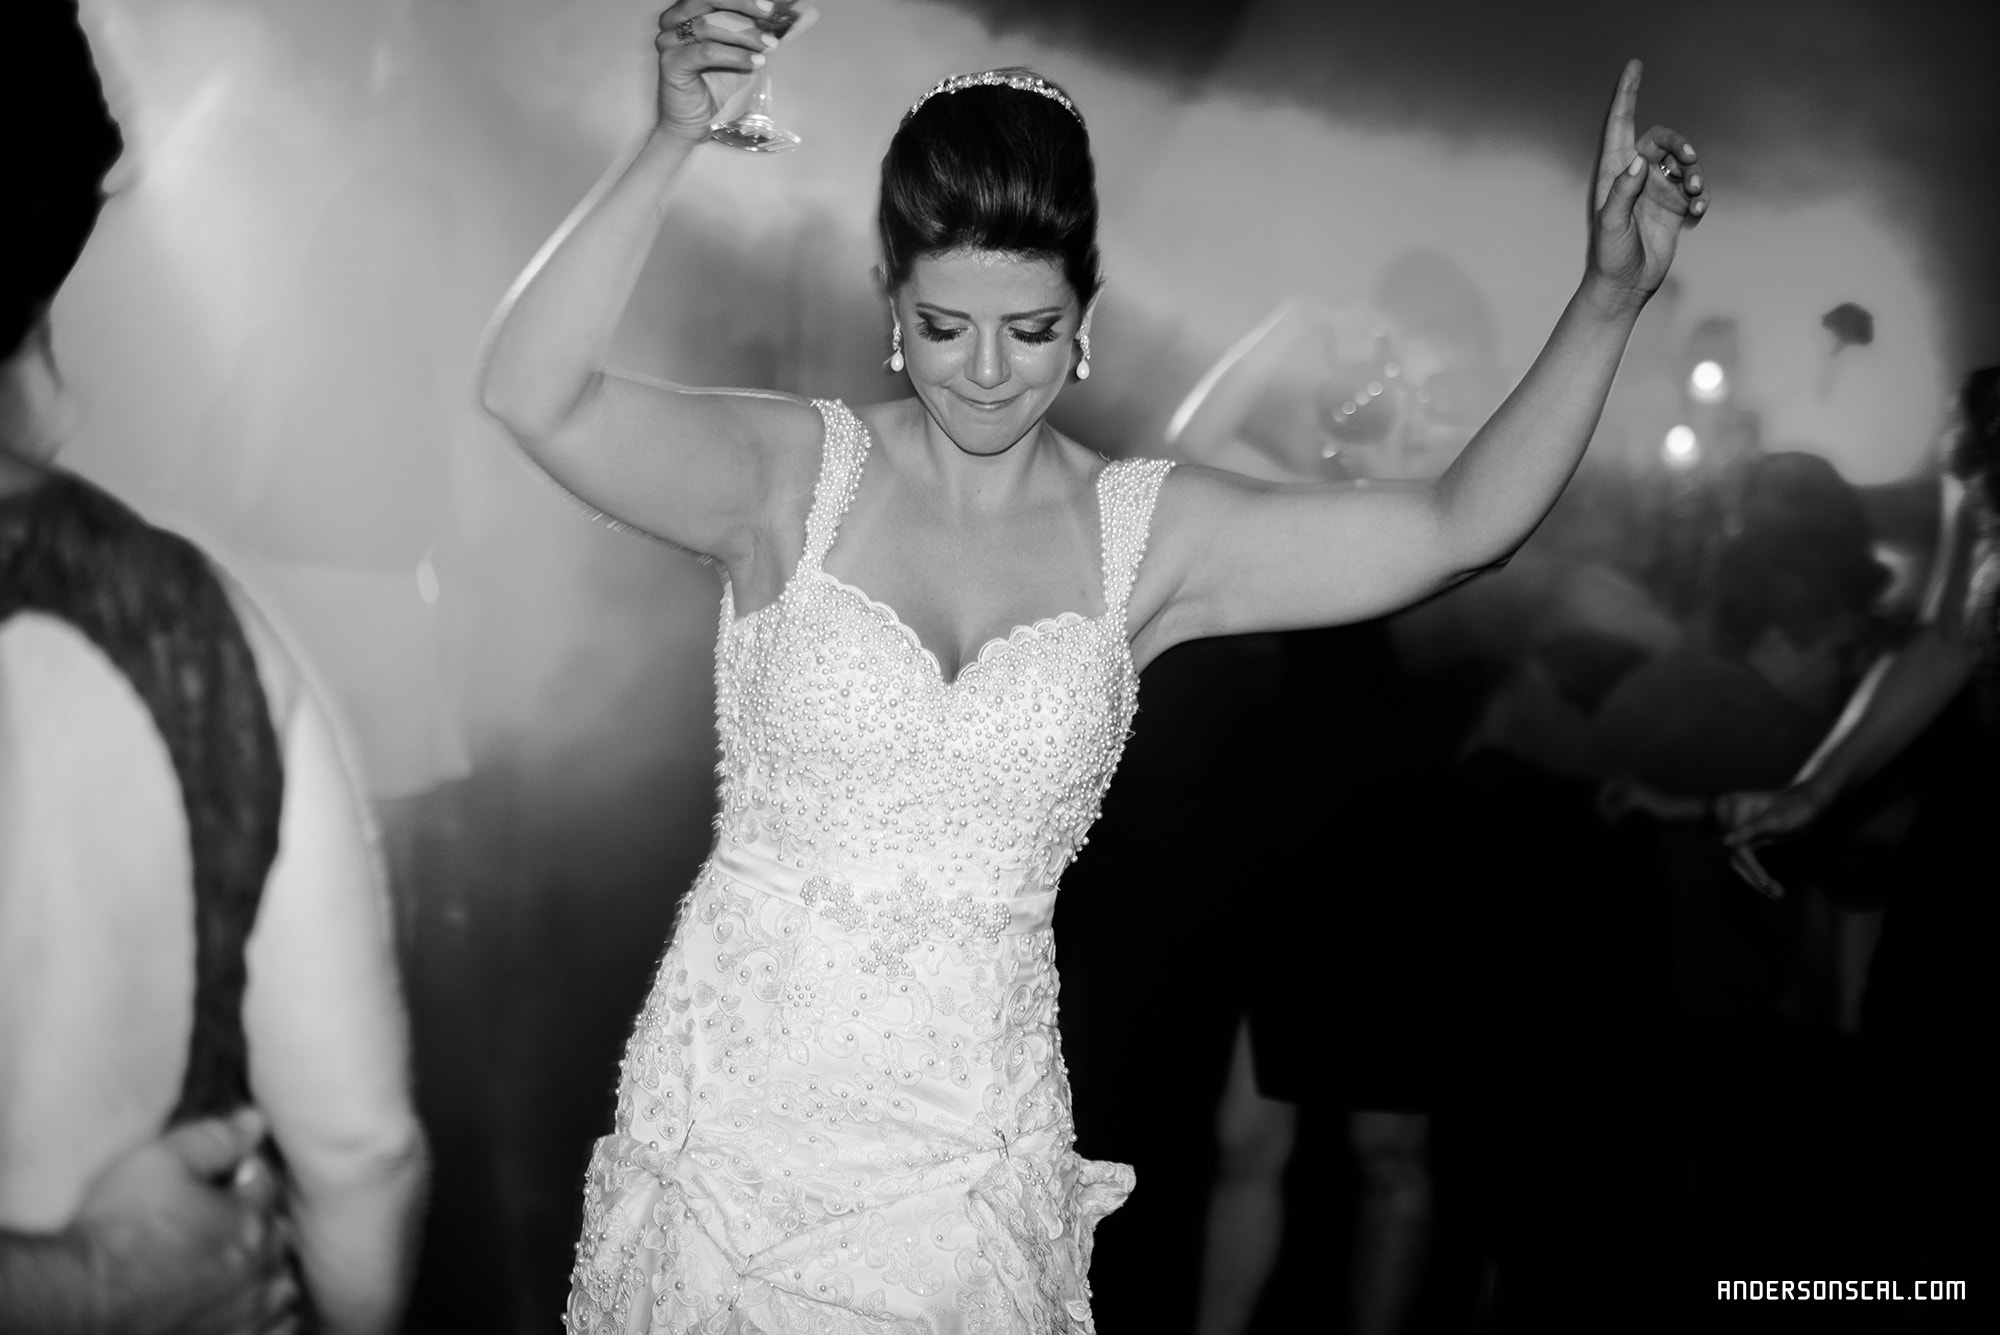 Nikon D810 sample photo. #wedding #casamento #bride #weddingphotography #fotoscasamento #casamentoangelicaethiago... photography